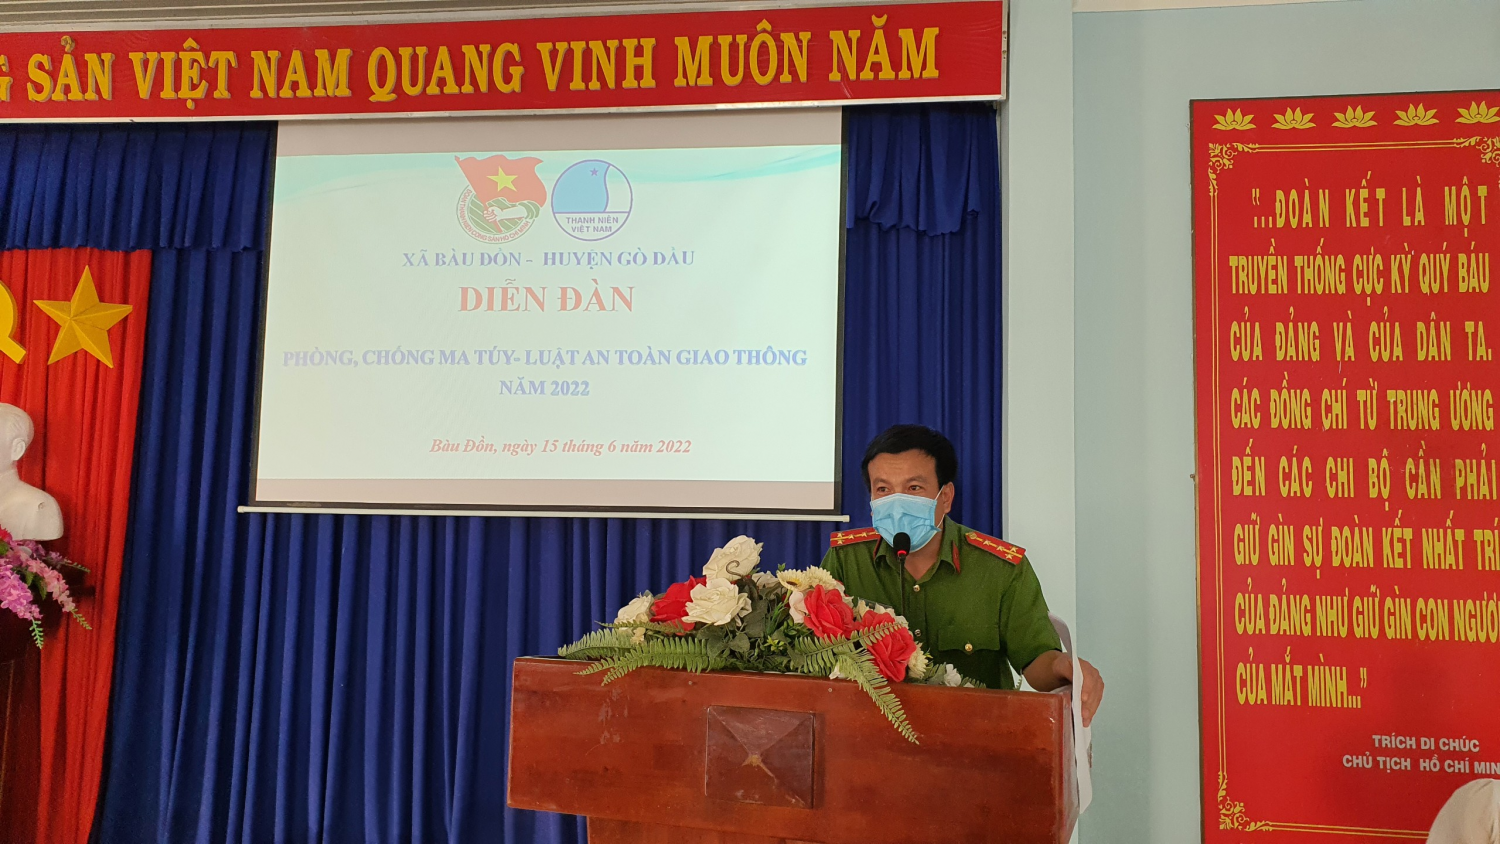 UBND xã Bàu Đồn tổ chức diễn đàn tuyên truyền, phổ biến pháp luật về phòng, chống ma túy và luật an toàn giao thông